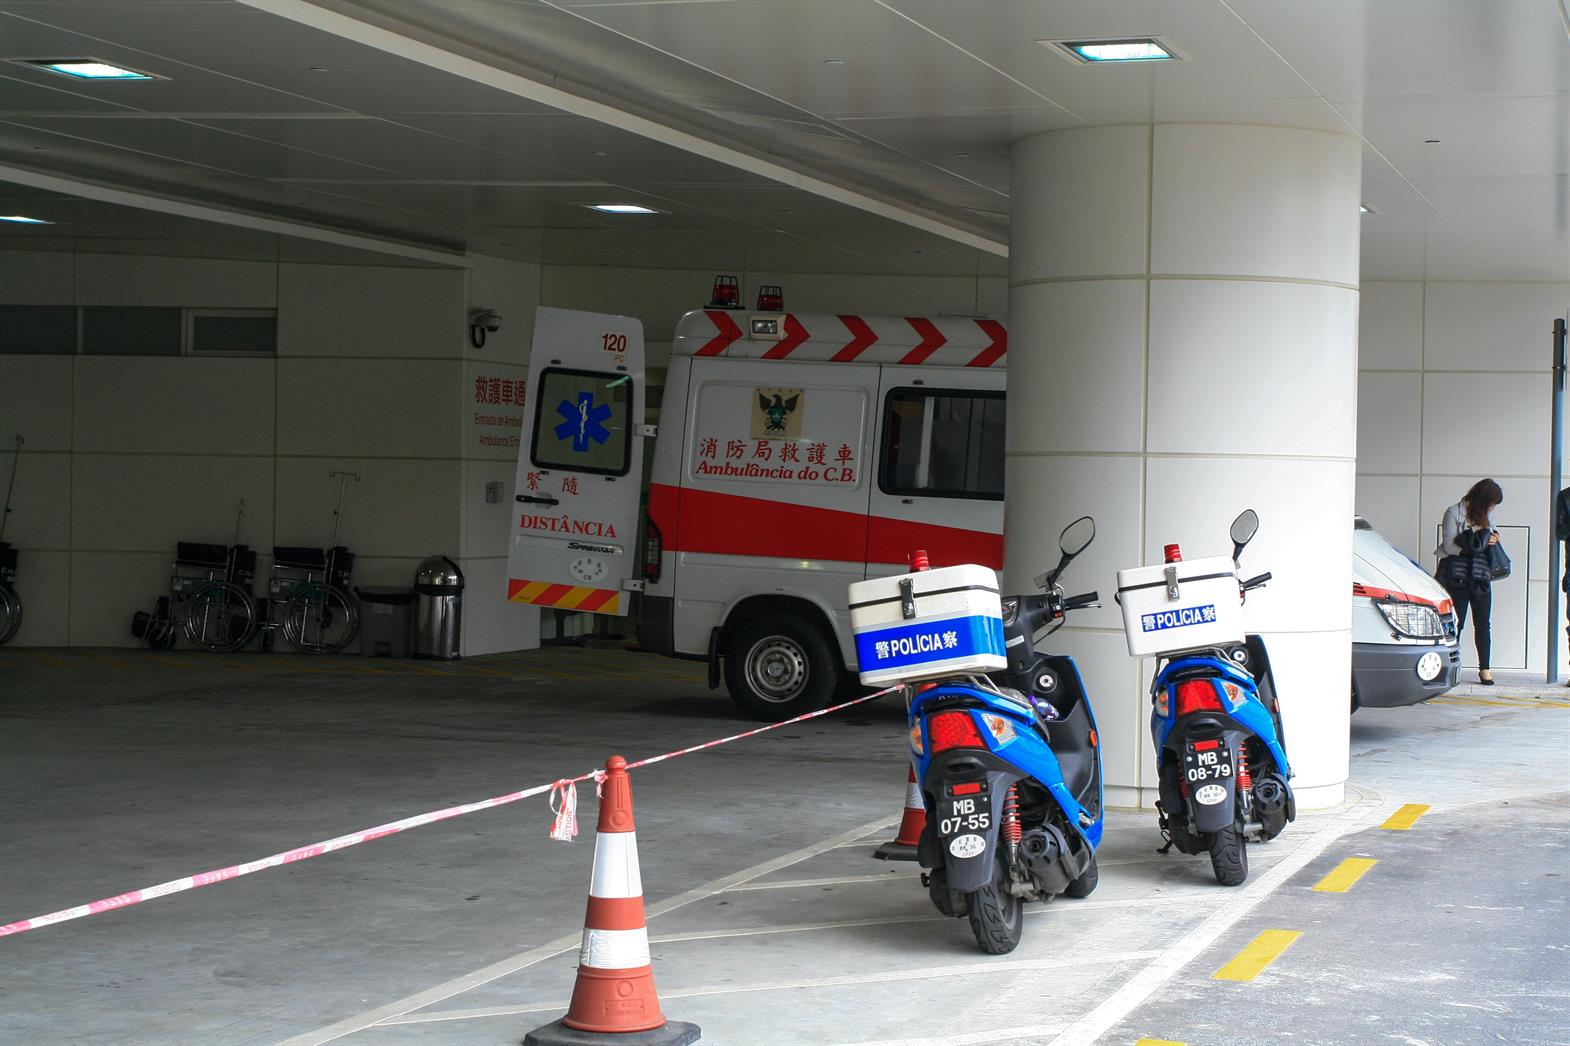 Une ambulance dans un hôpital. Il y a une ambulance devant les portes.